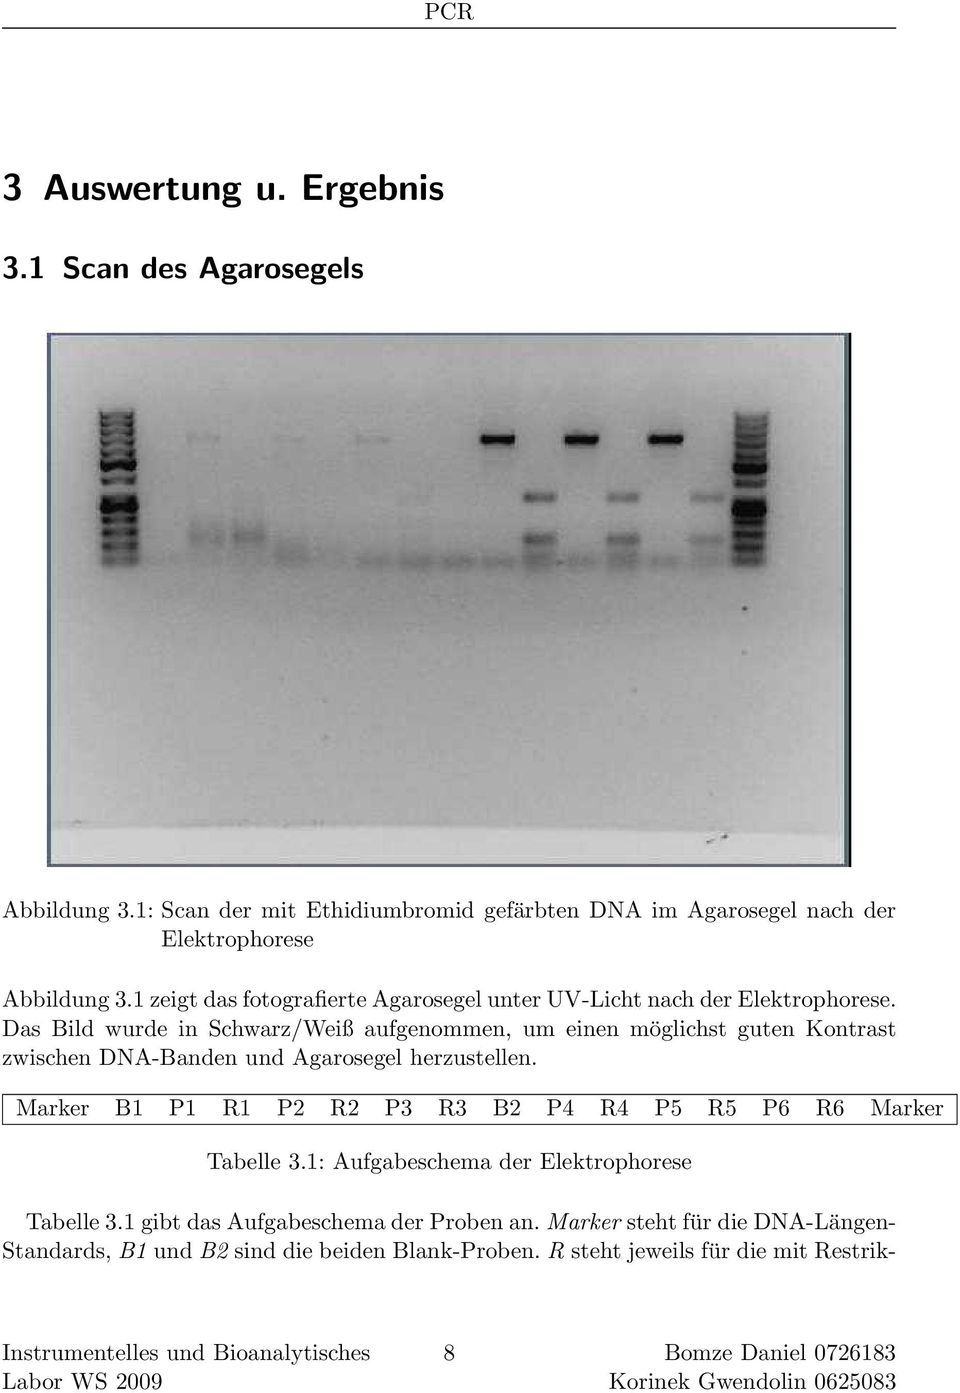 Das Bild wurde in Schwarz/Weiß aufgenommen, um einen möglichst guten Kontrast zwischen DNA-Banden und Agarosegel herzustellen.